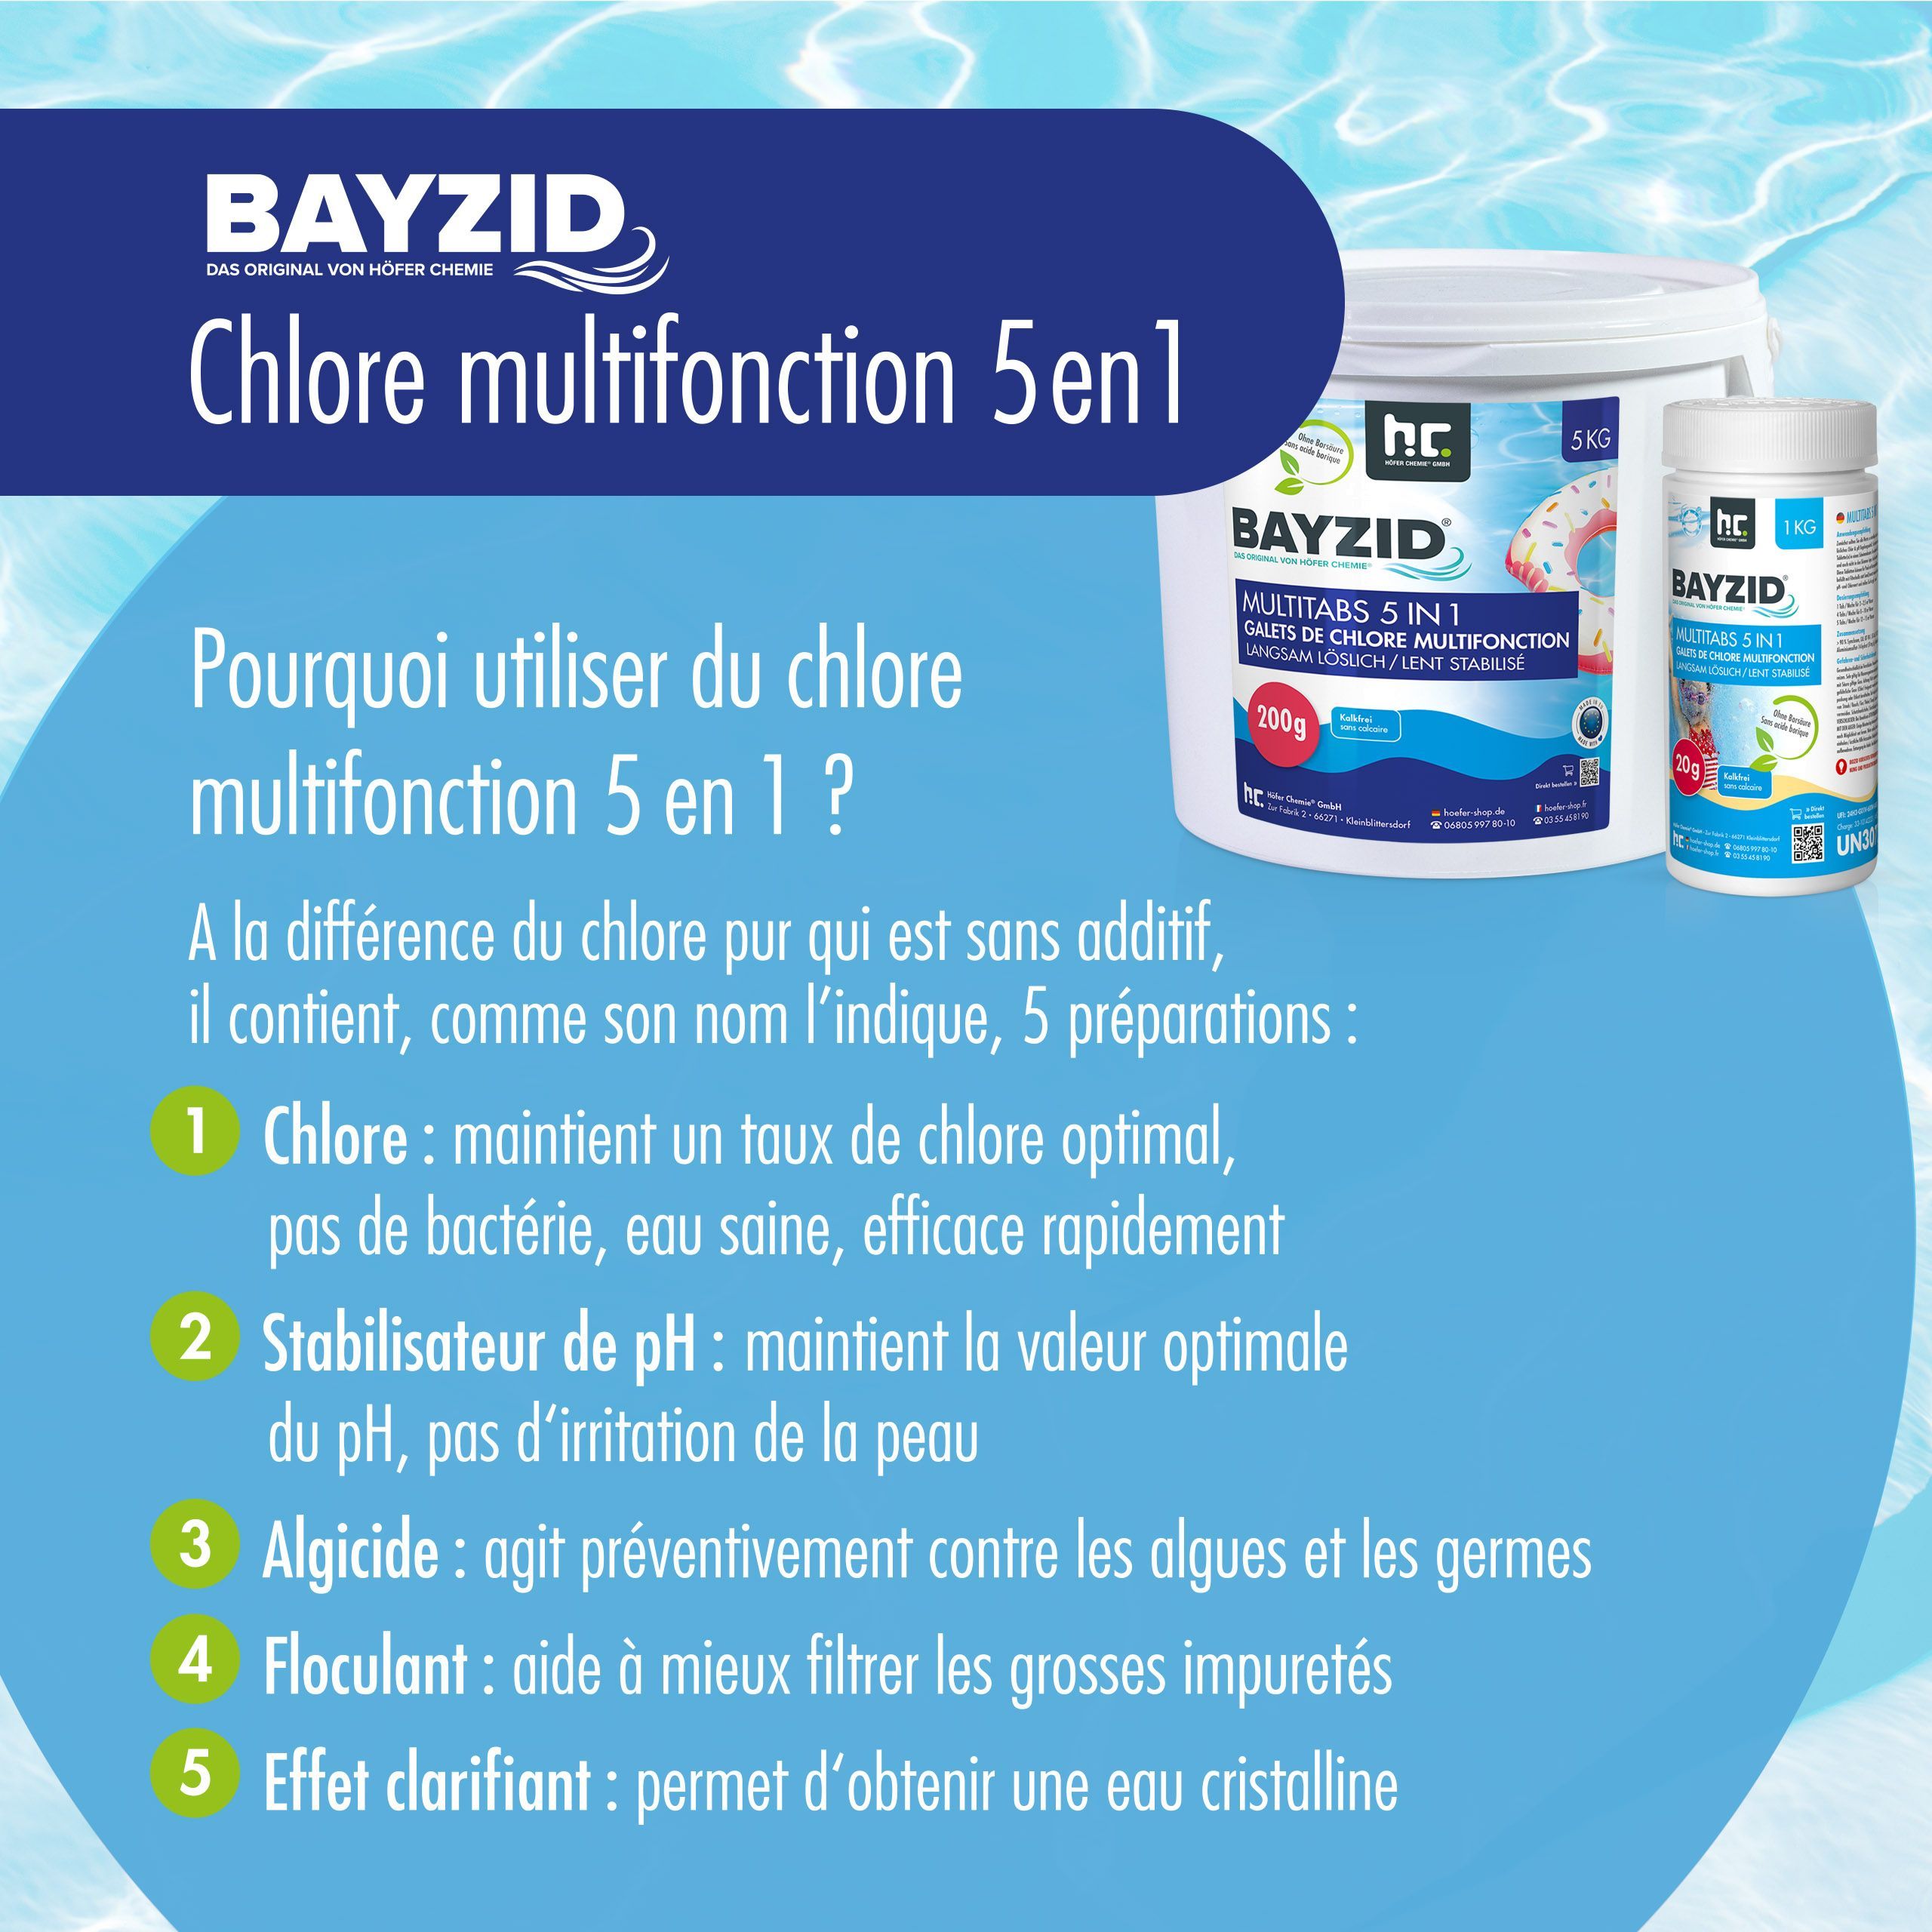 1 kg BAYZID® Multitabs 20g 5in1 für Pools